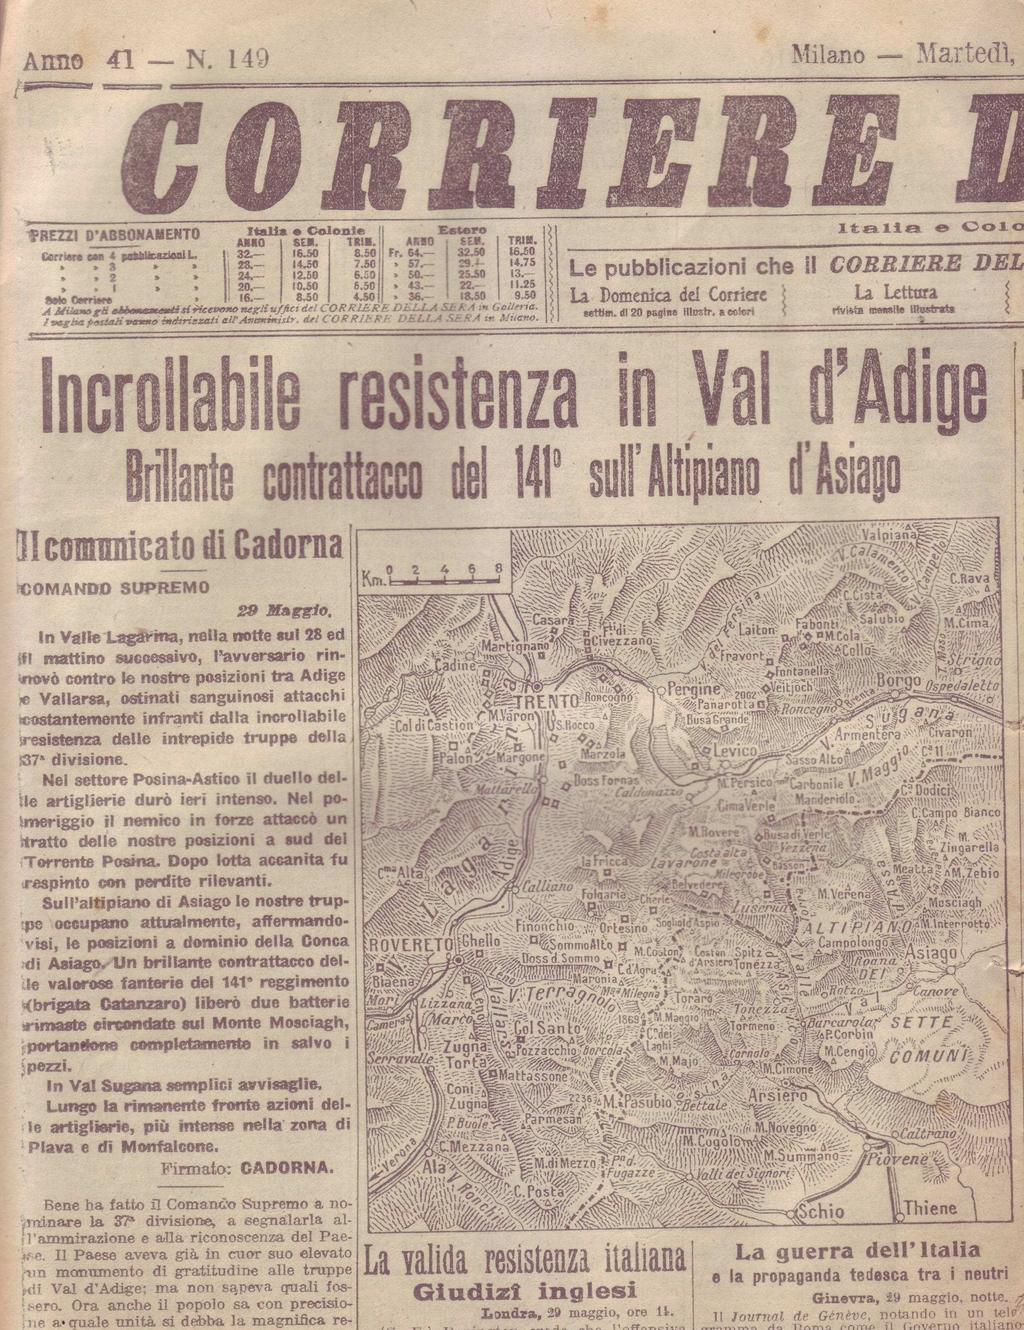 3 Prima pagina del Corriere della sera del 30 Maggio 1916 col Bollettino del Comando Supremo del 29 Maggio che cita